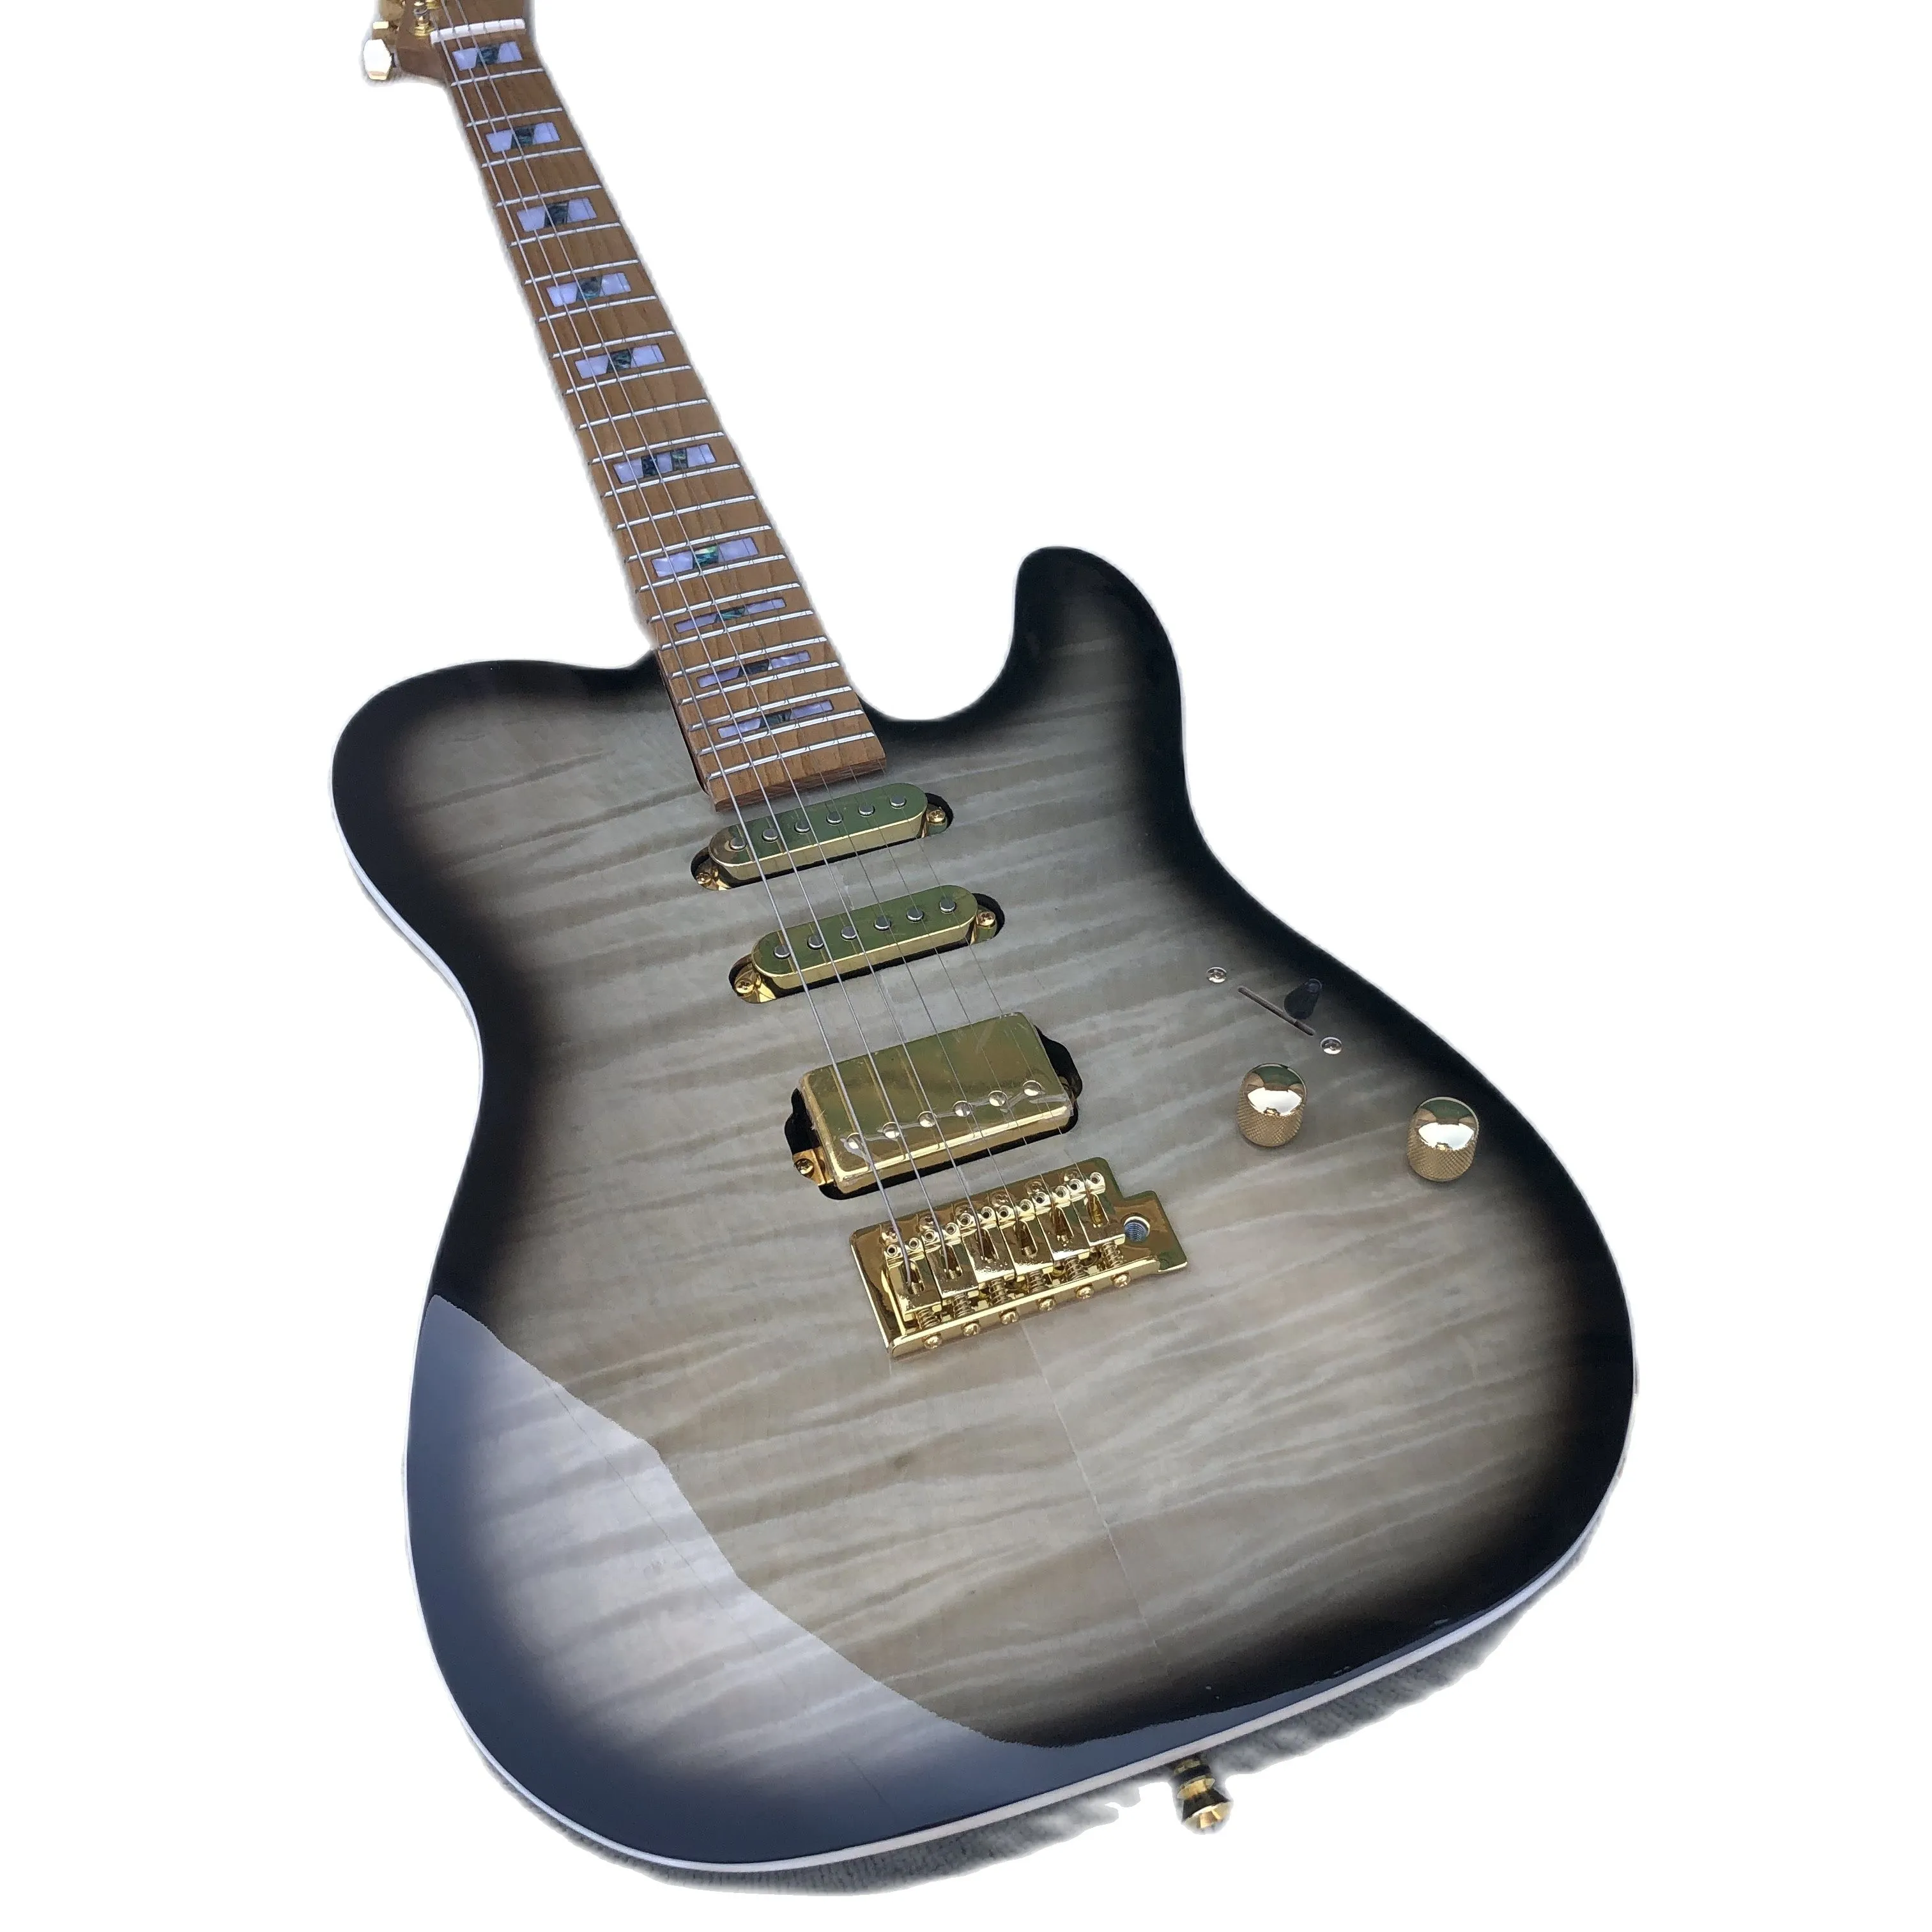 Neu eingetroffene 6-saitige E-Gitarre, transparente Lackierung, anthrazitfarbener Ahornhals, Abalone-Einlage, Tigerahornfurnier